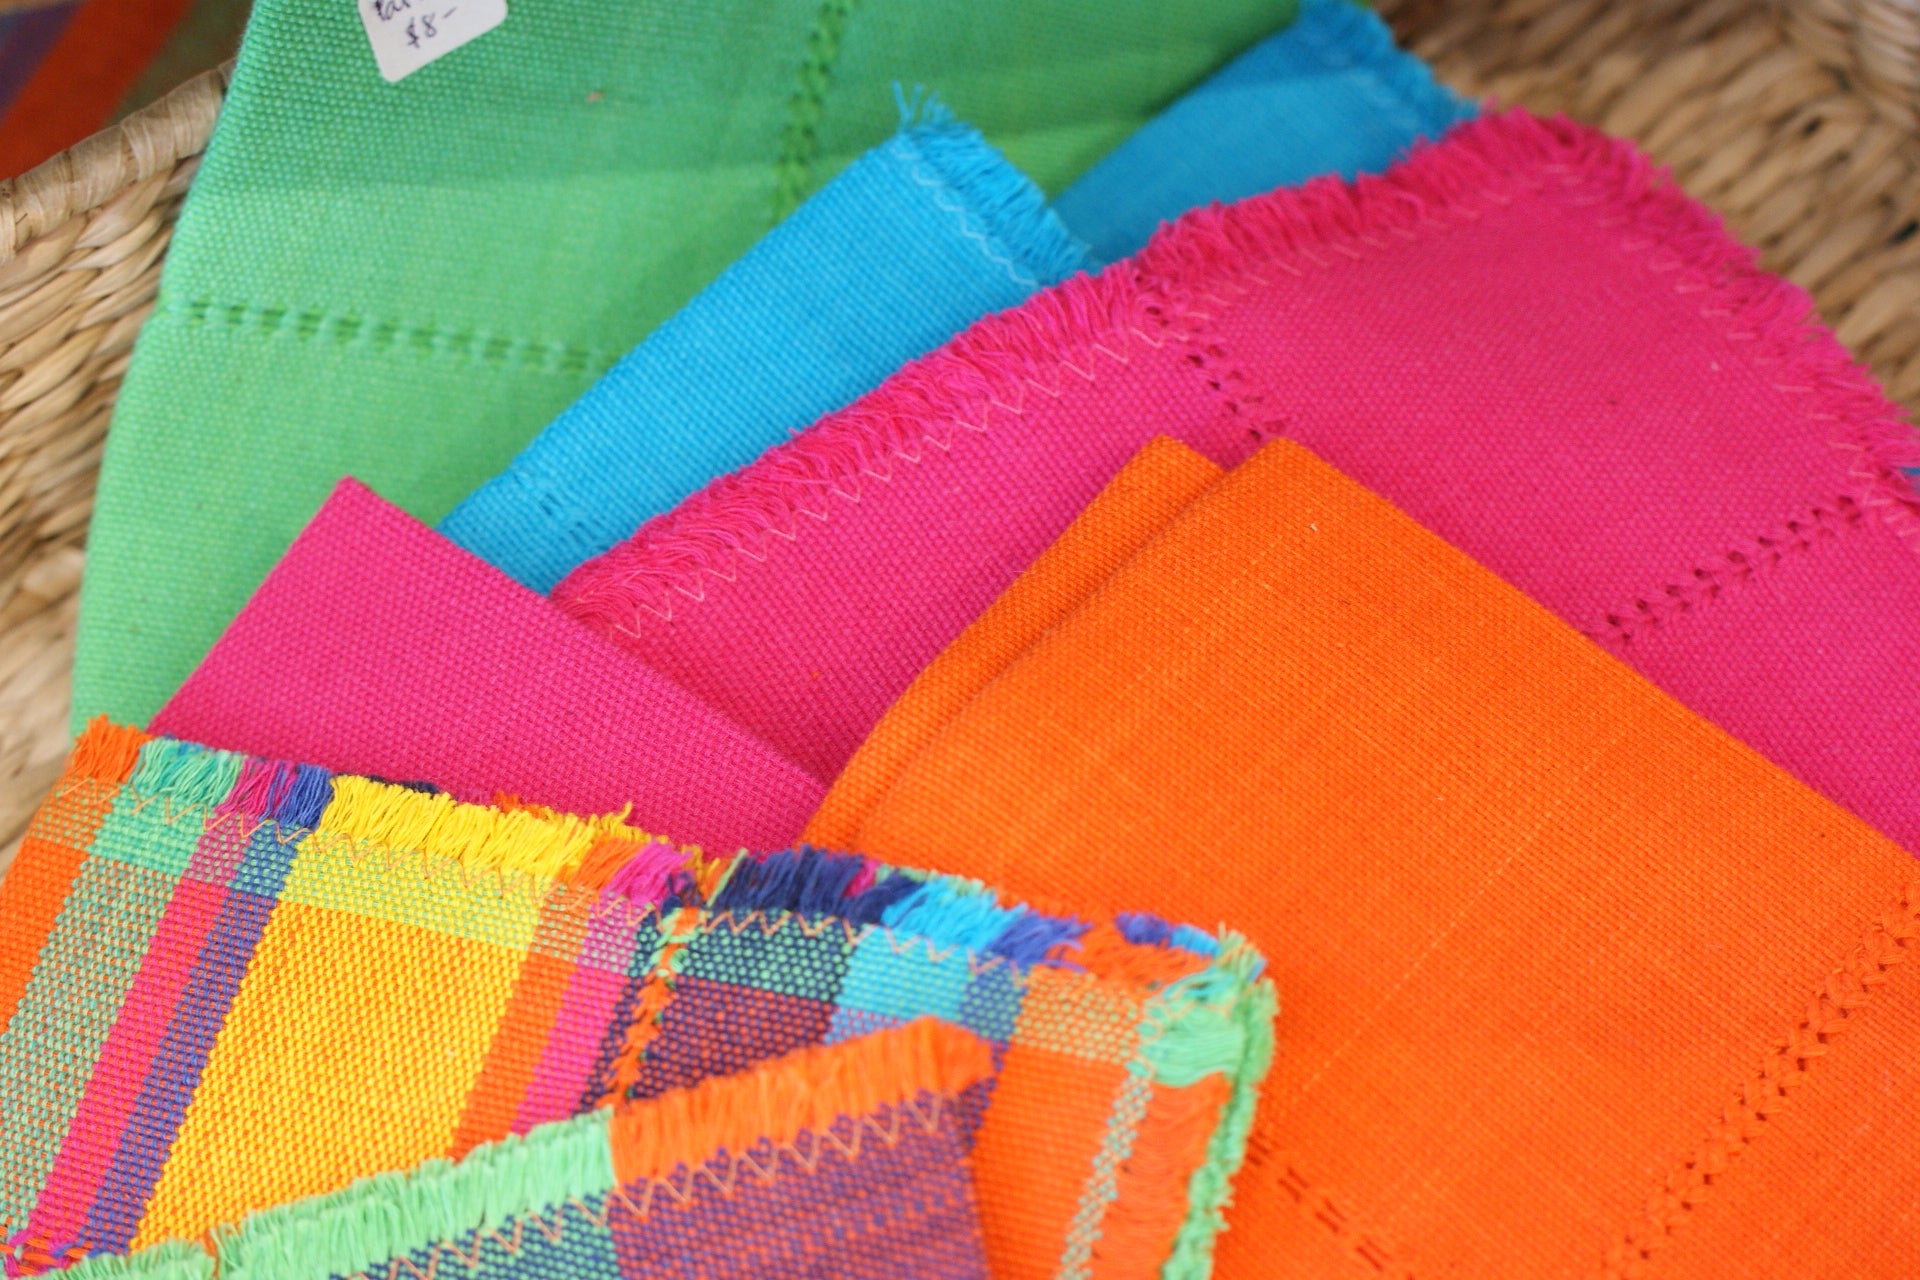 Michoacan cotton textiles